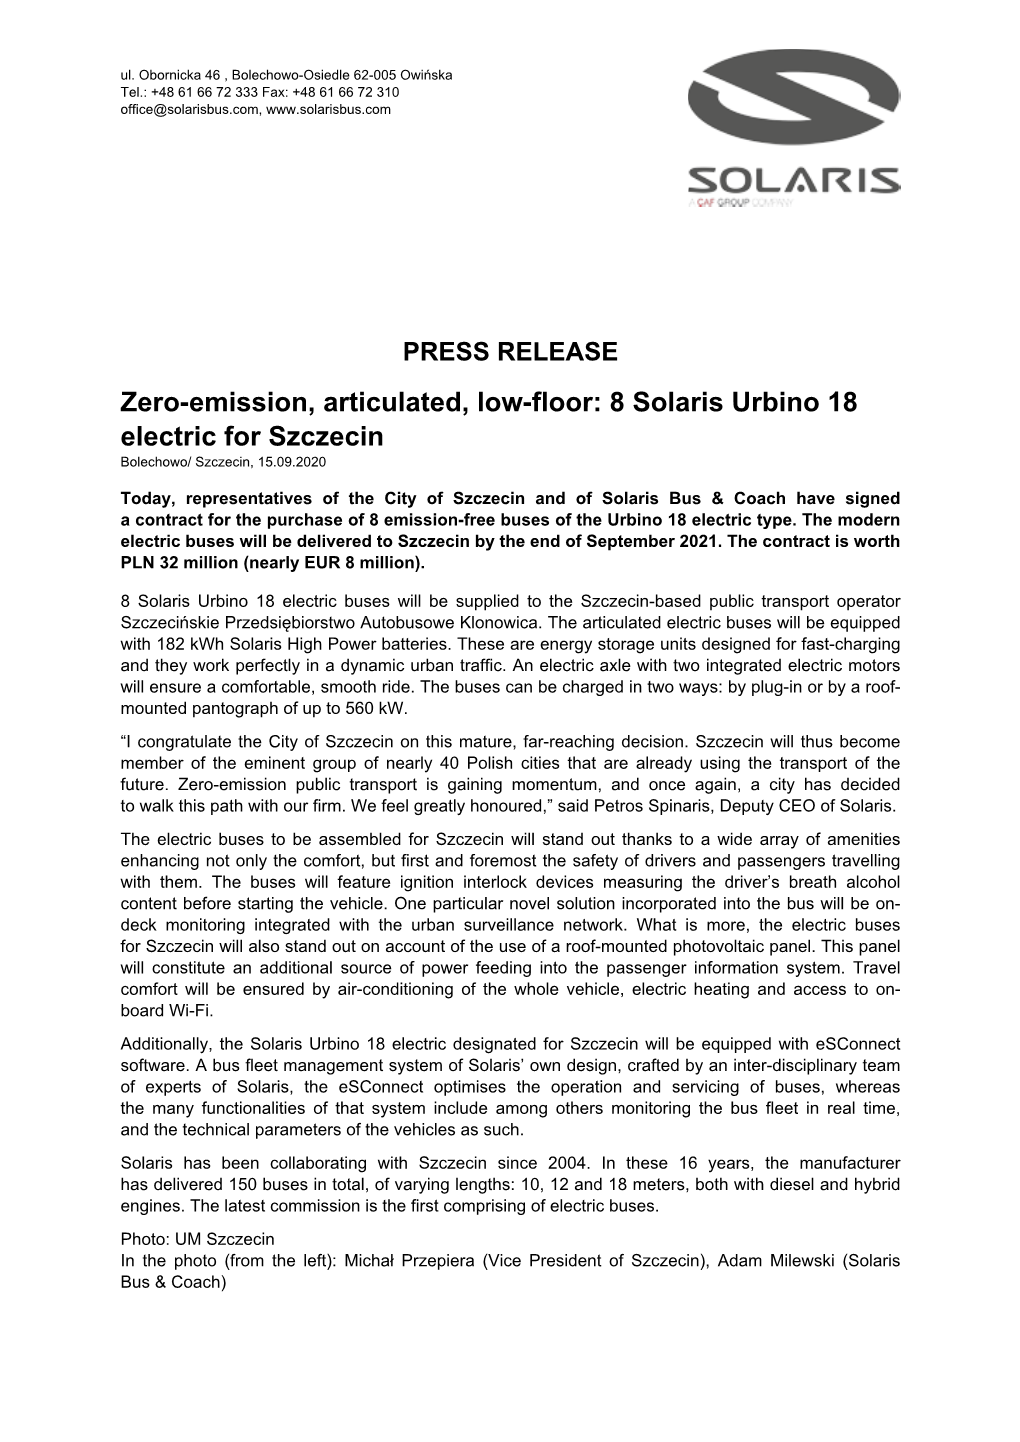 Zero-Emission, Articulated, Low-Floor: 8 Solaris Urbino 18 Electric for Szczecin Bolechowo/ Szczecin, 15.09.2020